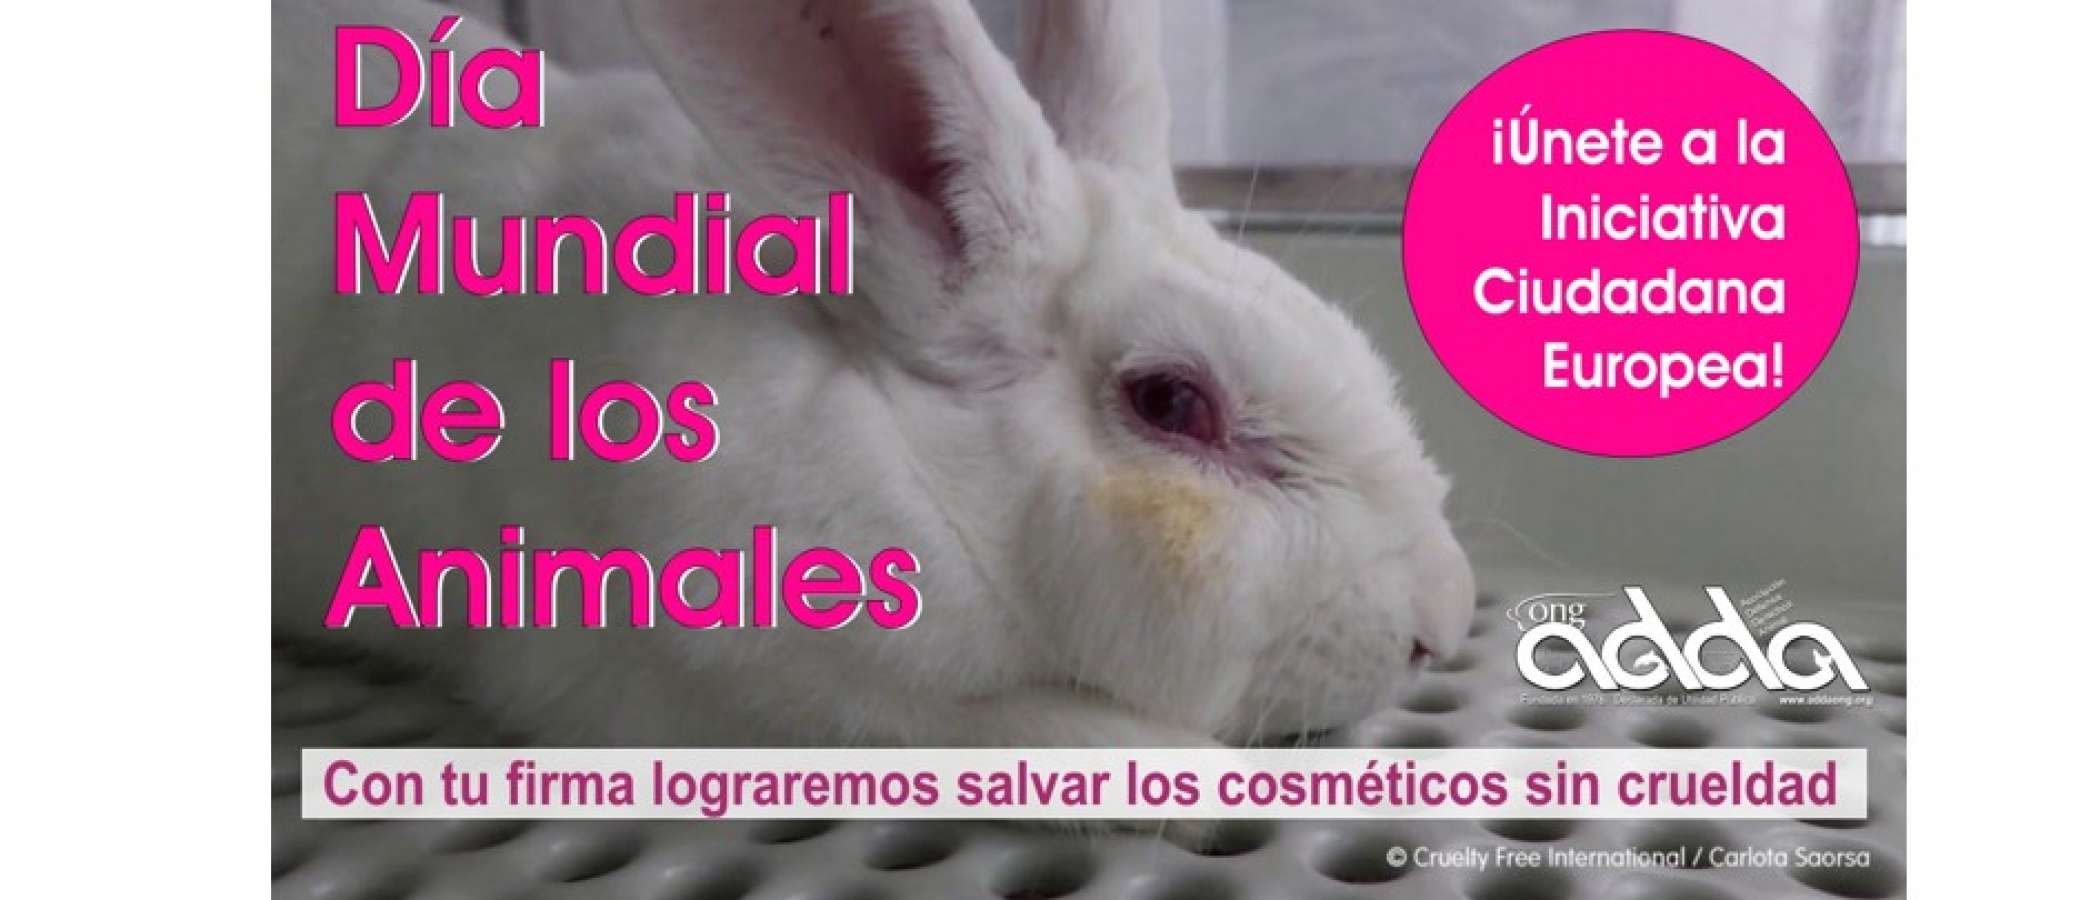 Ong ADDA: Día Mundial de los Animales